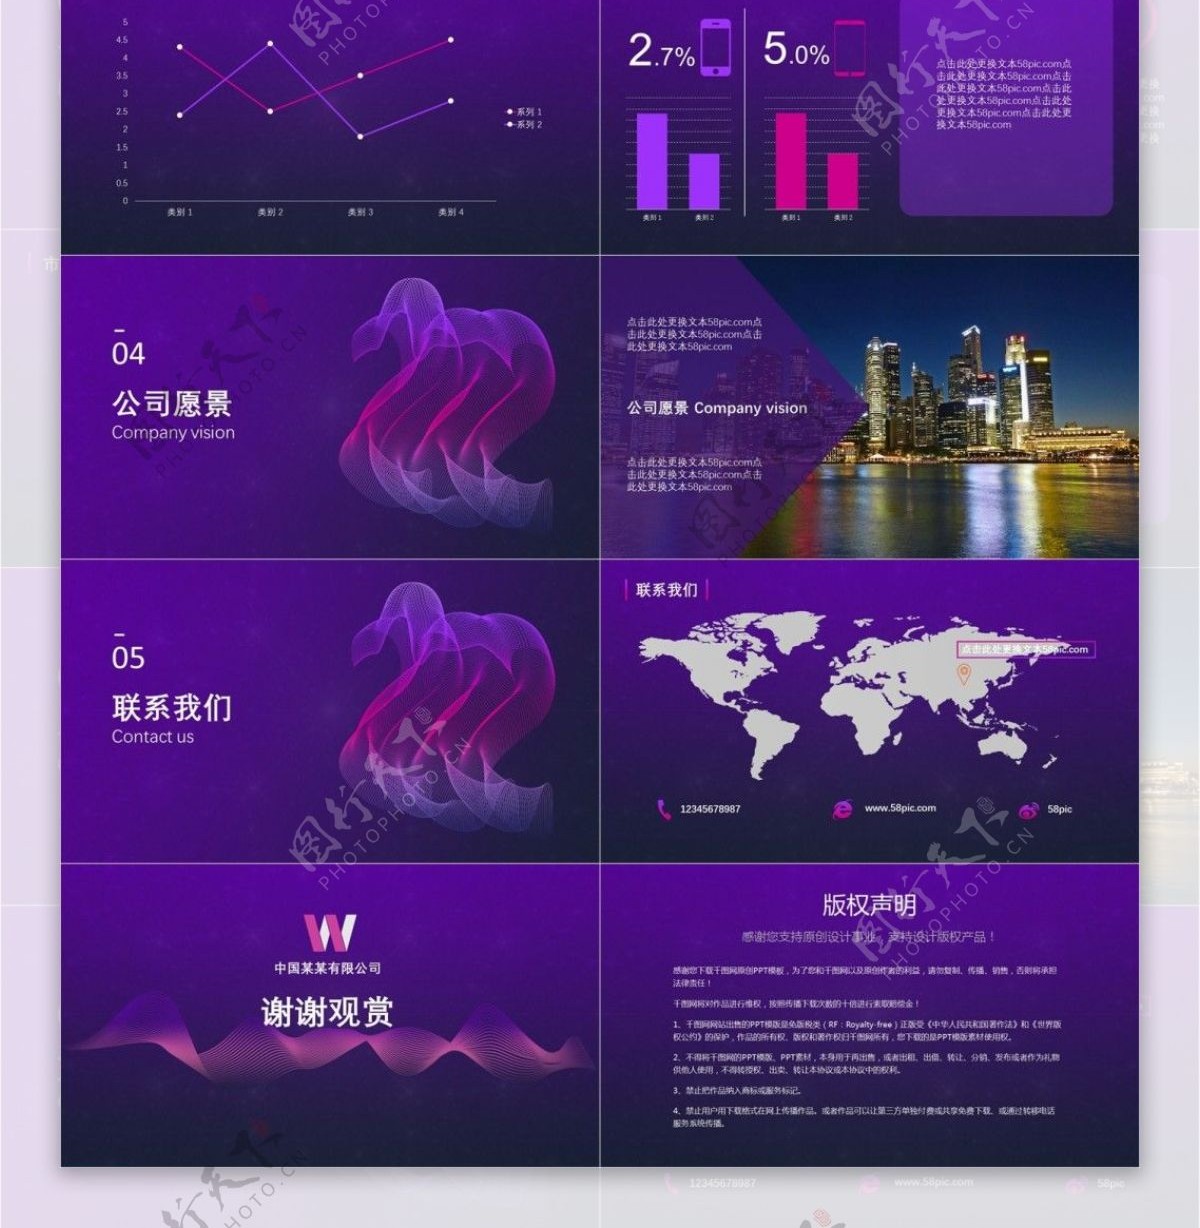 紫色高端大气企业宣传公司介绍PPT模板